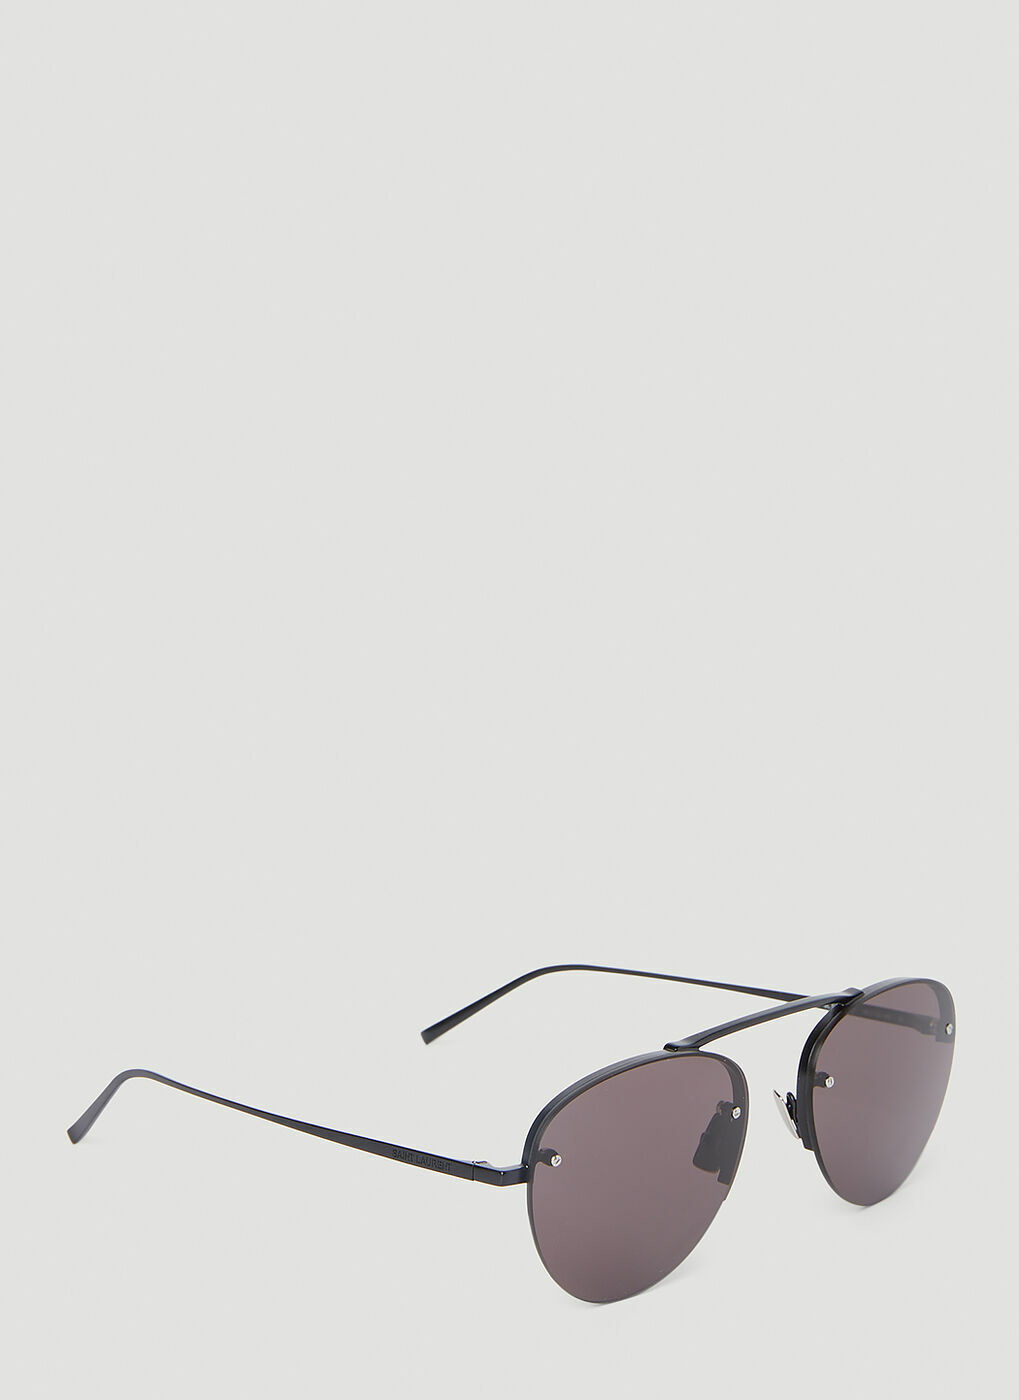 SL 575 Aviator Sunglasses in Black - Saint Laurent